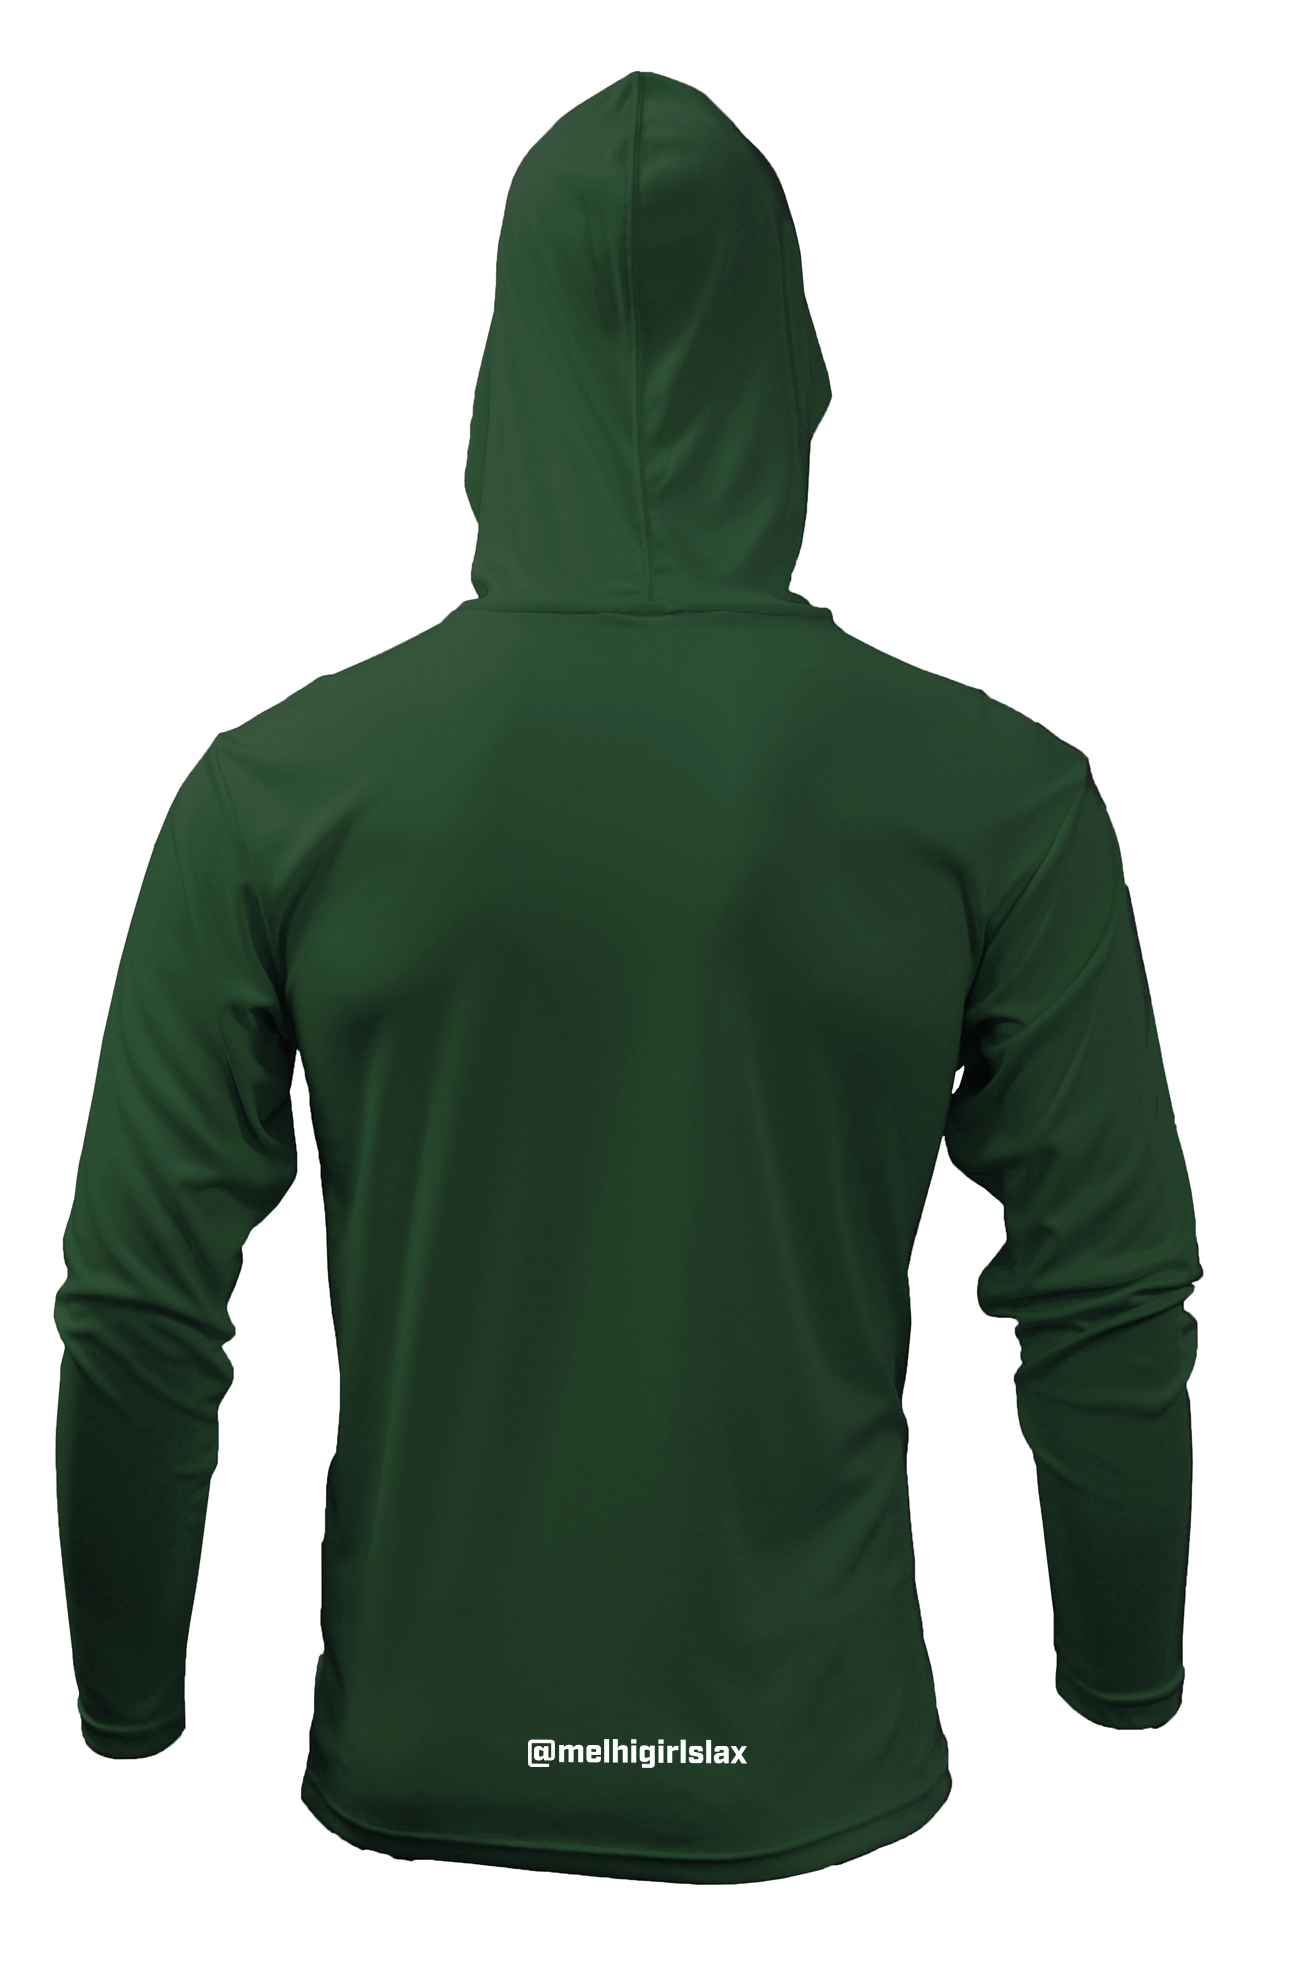 BAW Athletic Wear XT106 - Adult Xtreme-Tek Long Sleeve Hood